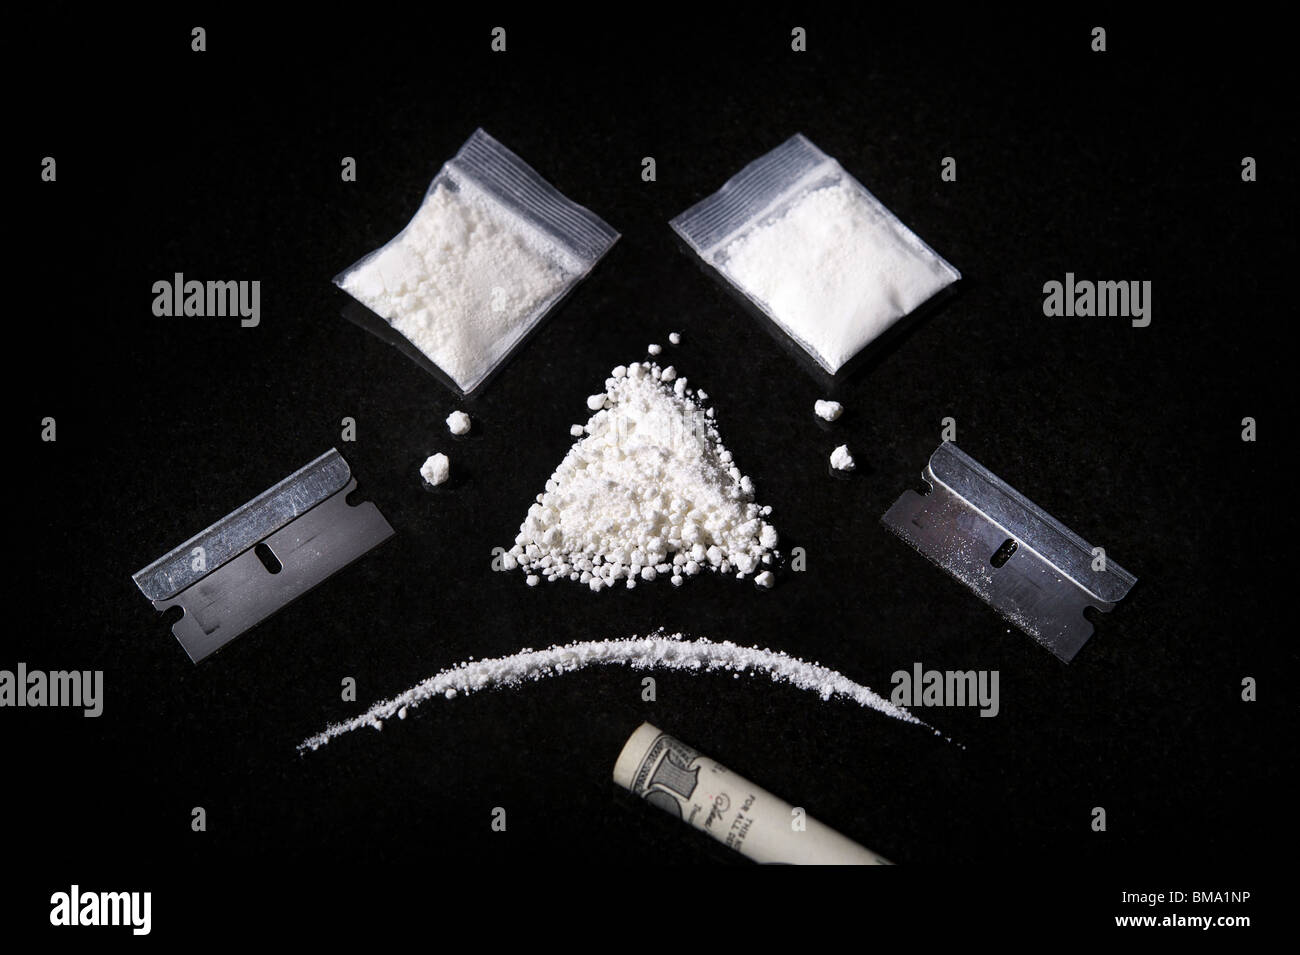 Immagine di una composizione di cocaina, rasoio e laminati bill, facendo una faccina triste Foto Stock